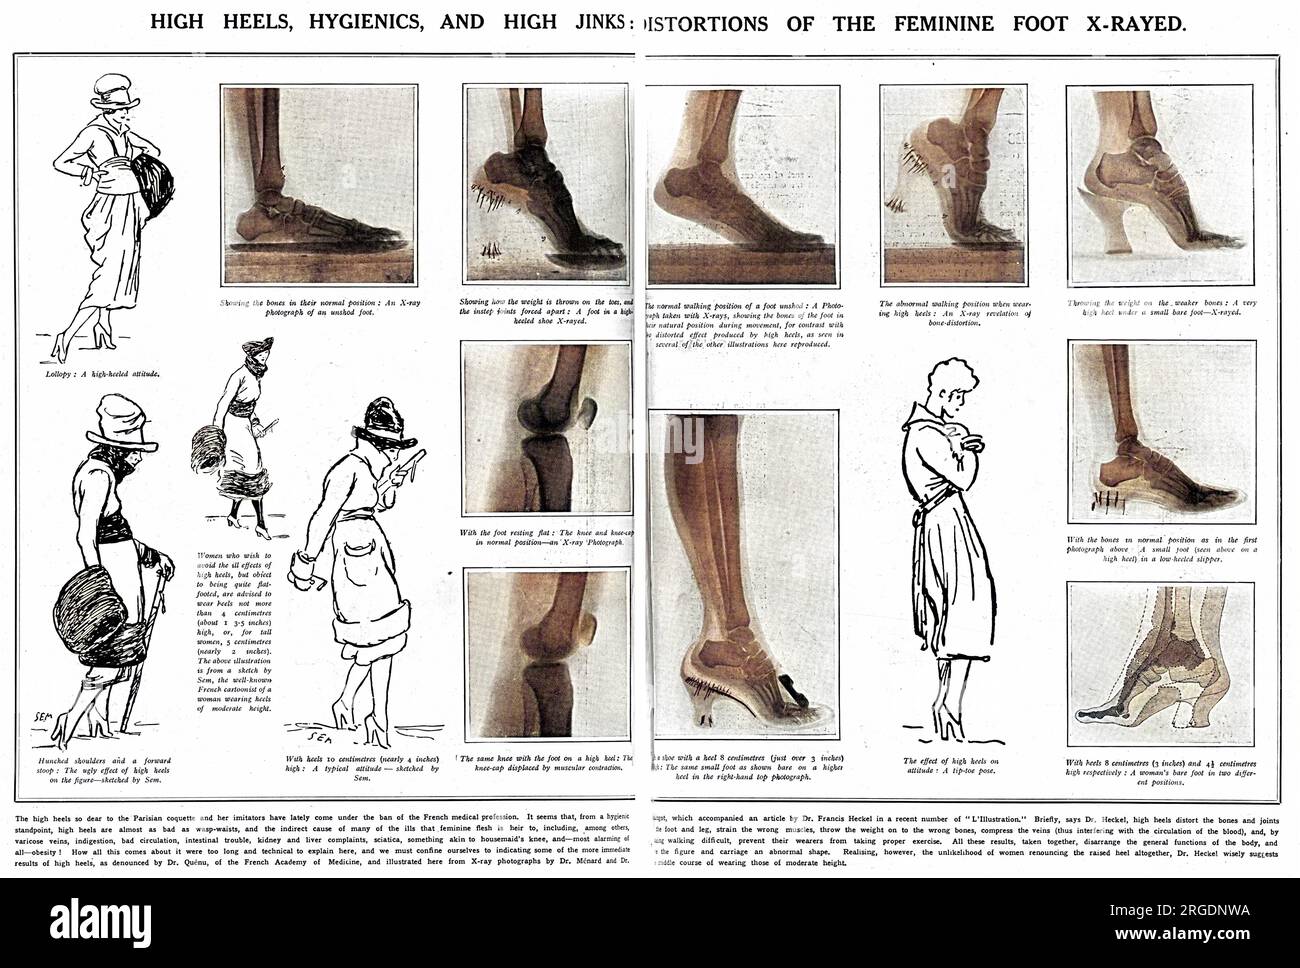 Eine Doppelseite aus dem Sketch berichtet über die unnatürlichen Belastungen, die auf die Füße durch das Tragen von hohen Absätzen, die von der französischen Ärzteschaft verboten, schlecht für die Füße und ermutigende schlechte Haltung. Frauen, die sich gegen flache Füße aussprachen, wurde empfohlen, Absätze von nicht mehr als vier Zentimetern zu tragen. Die Skizzen unter den Röntgenaufnahmen stammen von dem berühmten französischen Karikaturisten Sem. Stockfoto